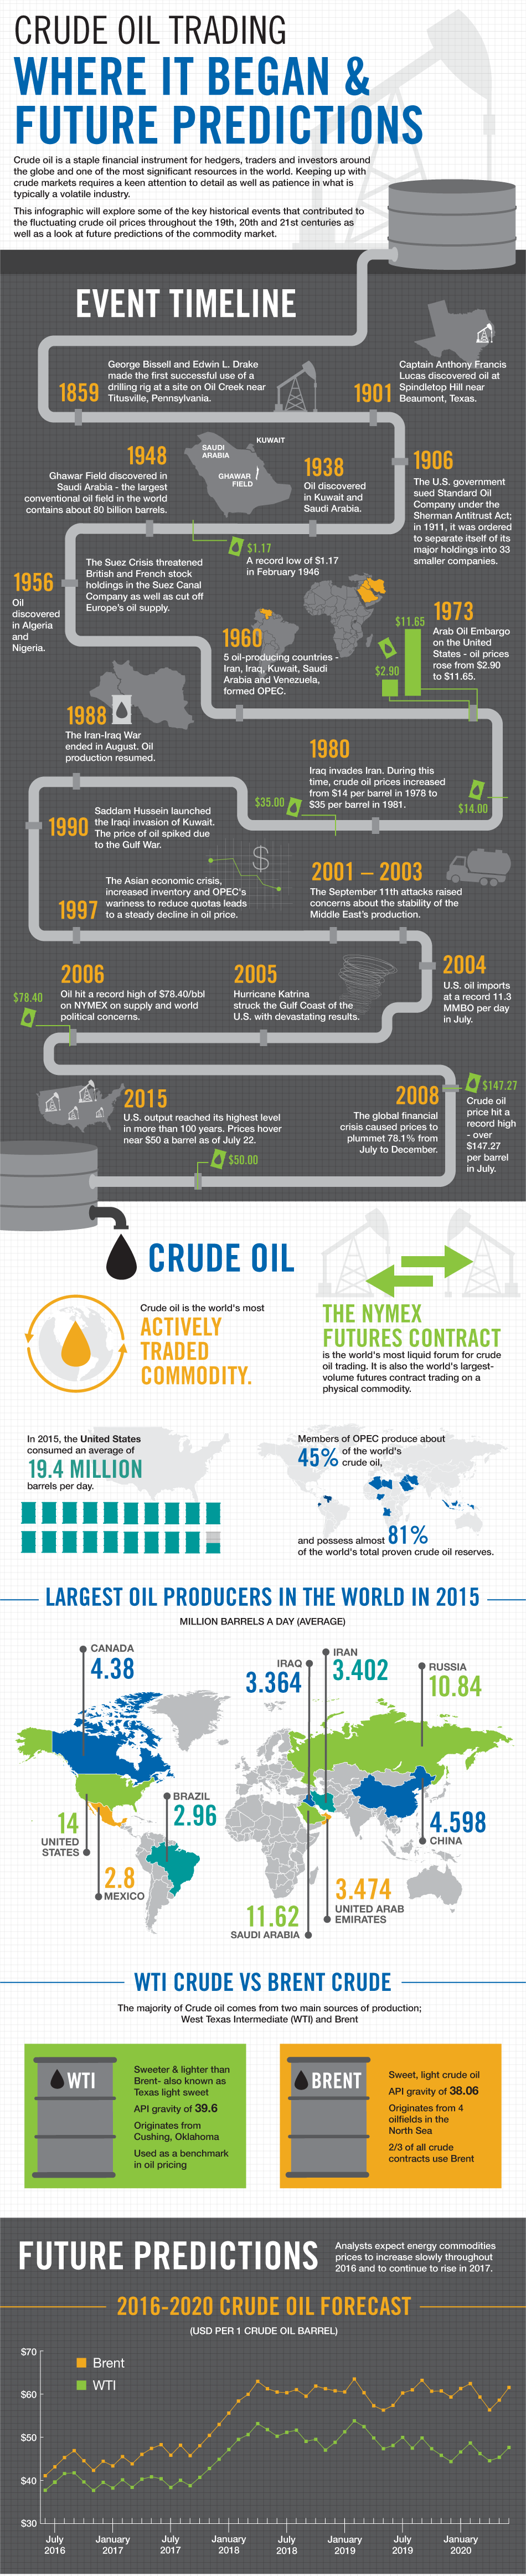 Crude Oil Trading, Crude Oil Predictions